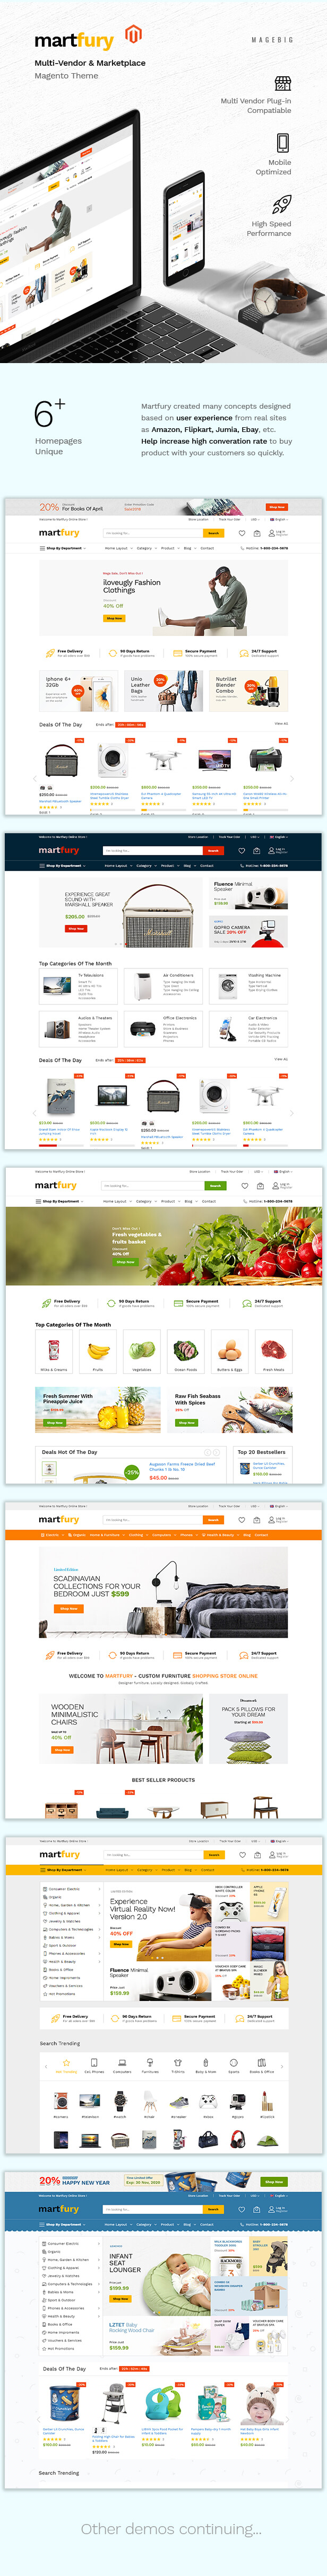 demo1 - Martfury - Marketplace Multipurporse eCommerce Magento 2 Theme